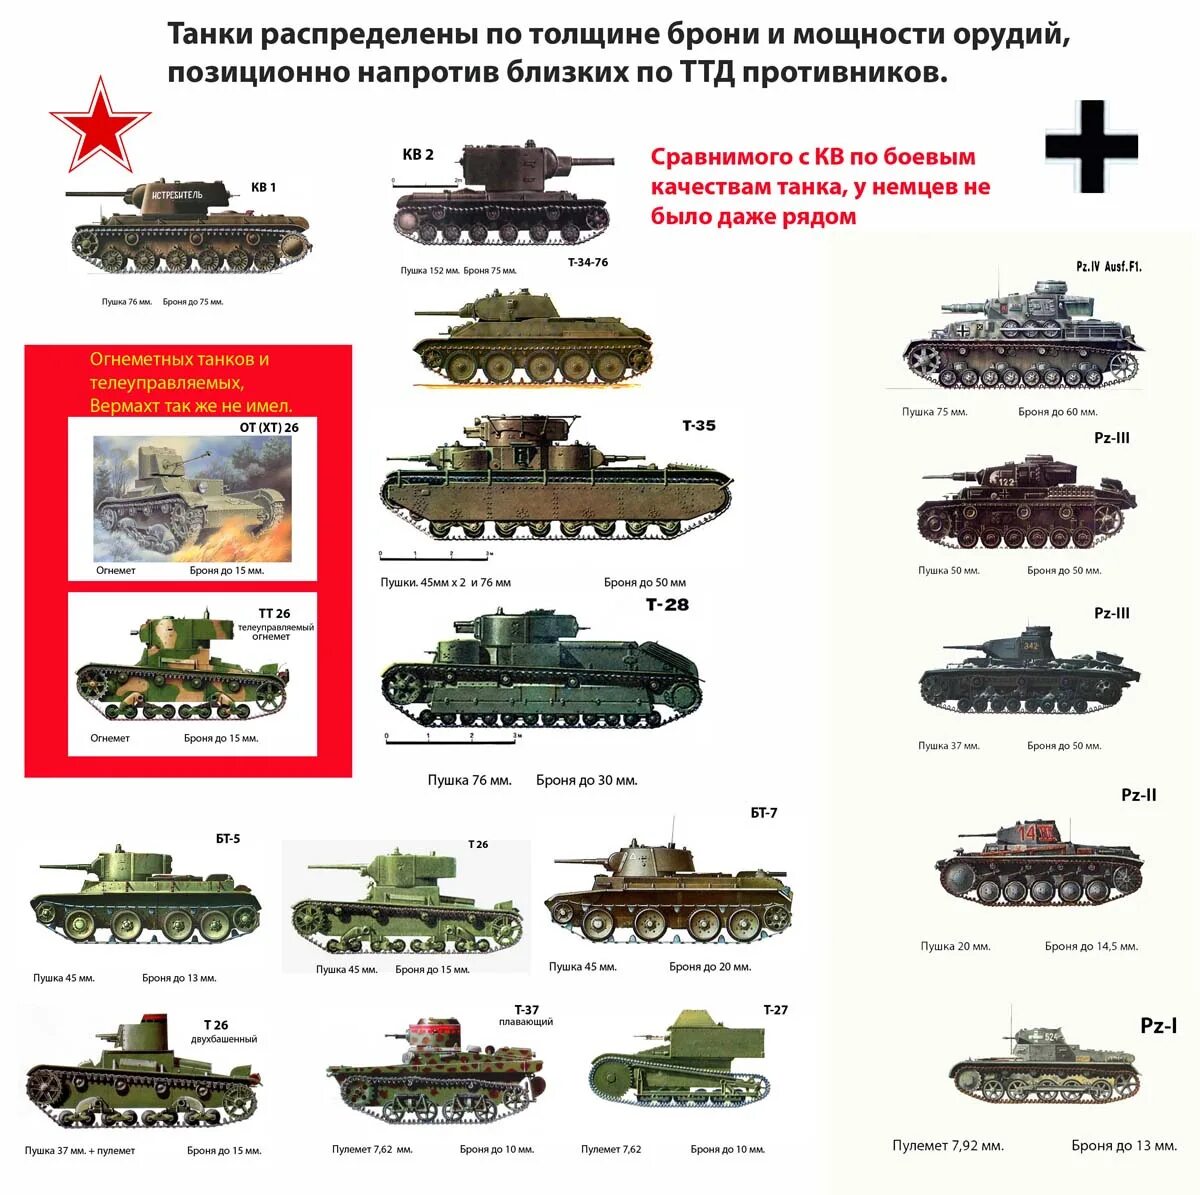 Какими были танки в начале. Название танков Великой Отечественной войны. Название немецких танков 1941. Таблица танков ВМВ сбоку. Танки СССР второй мировой войны 1941.